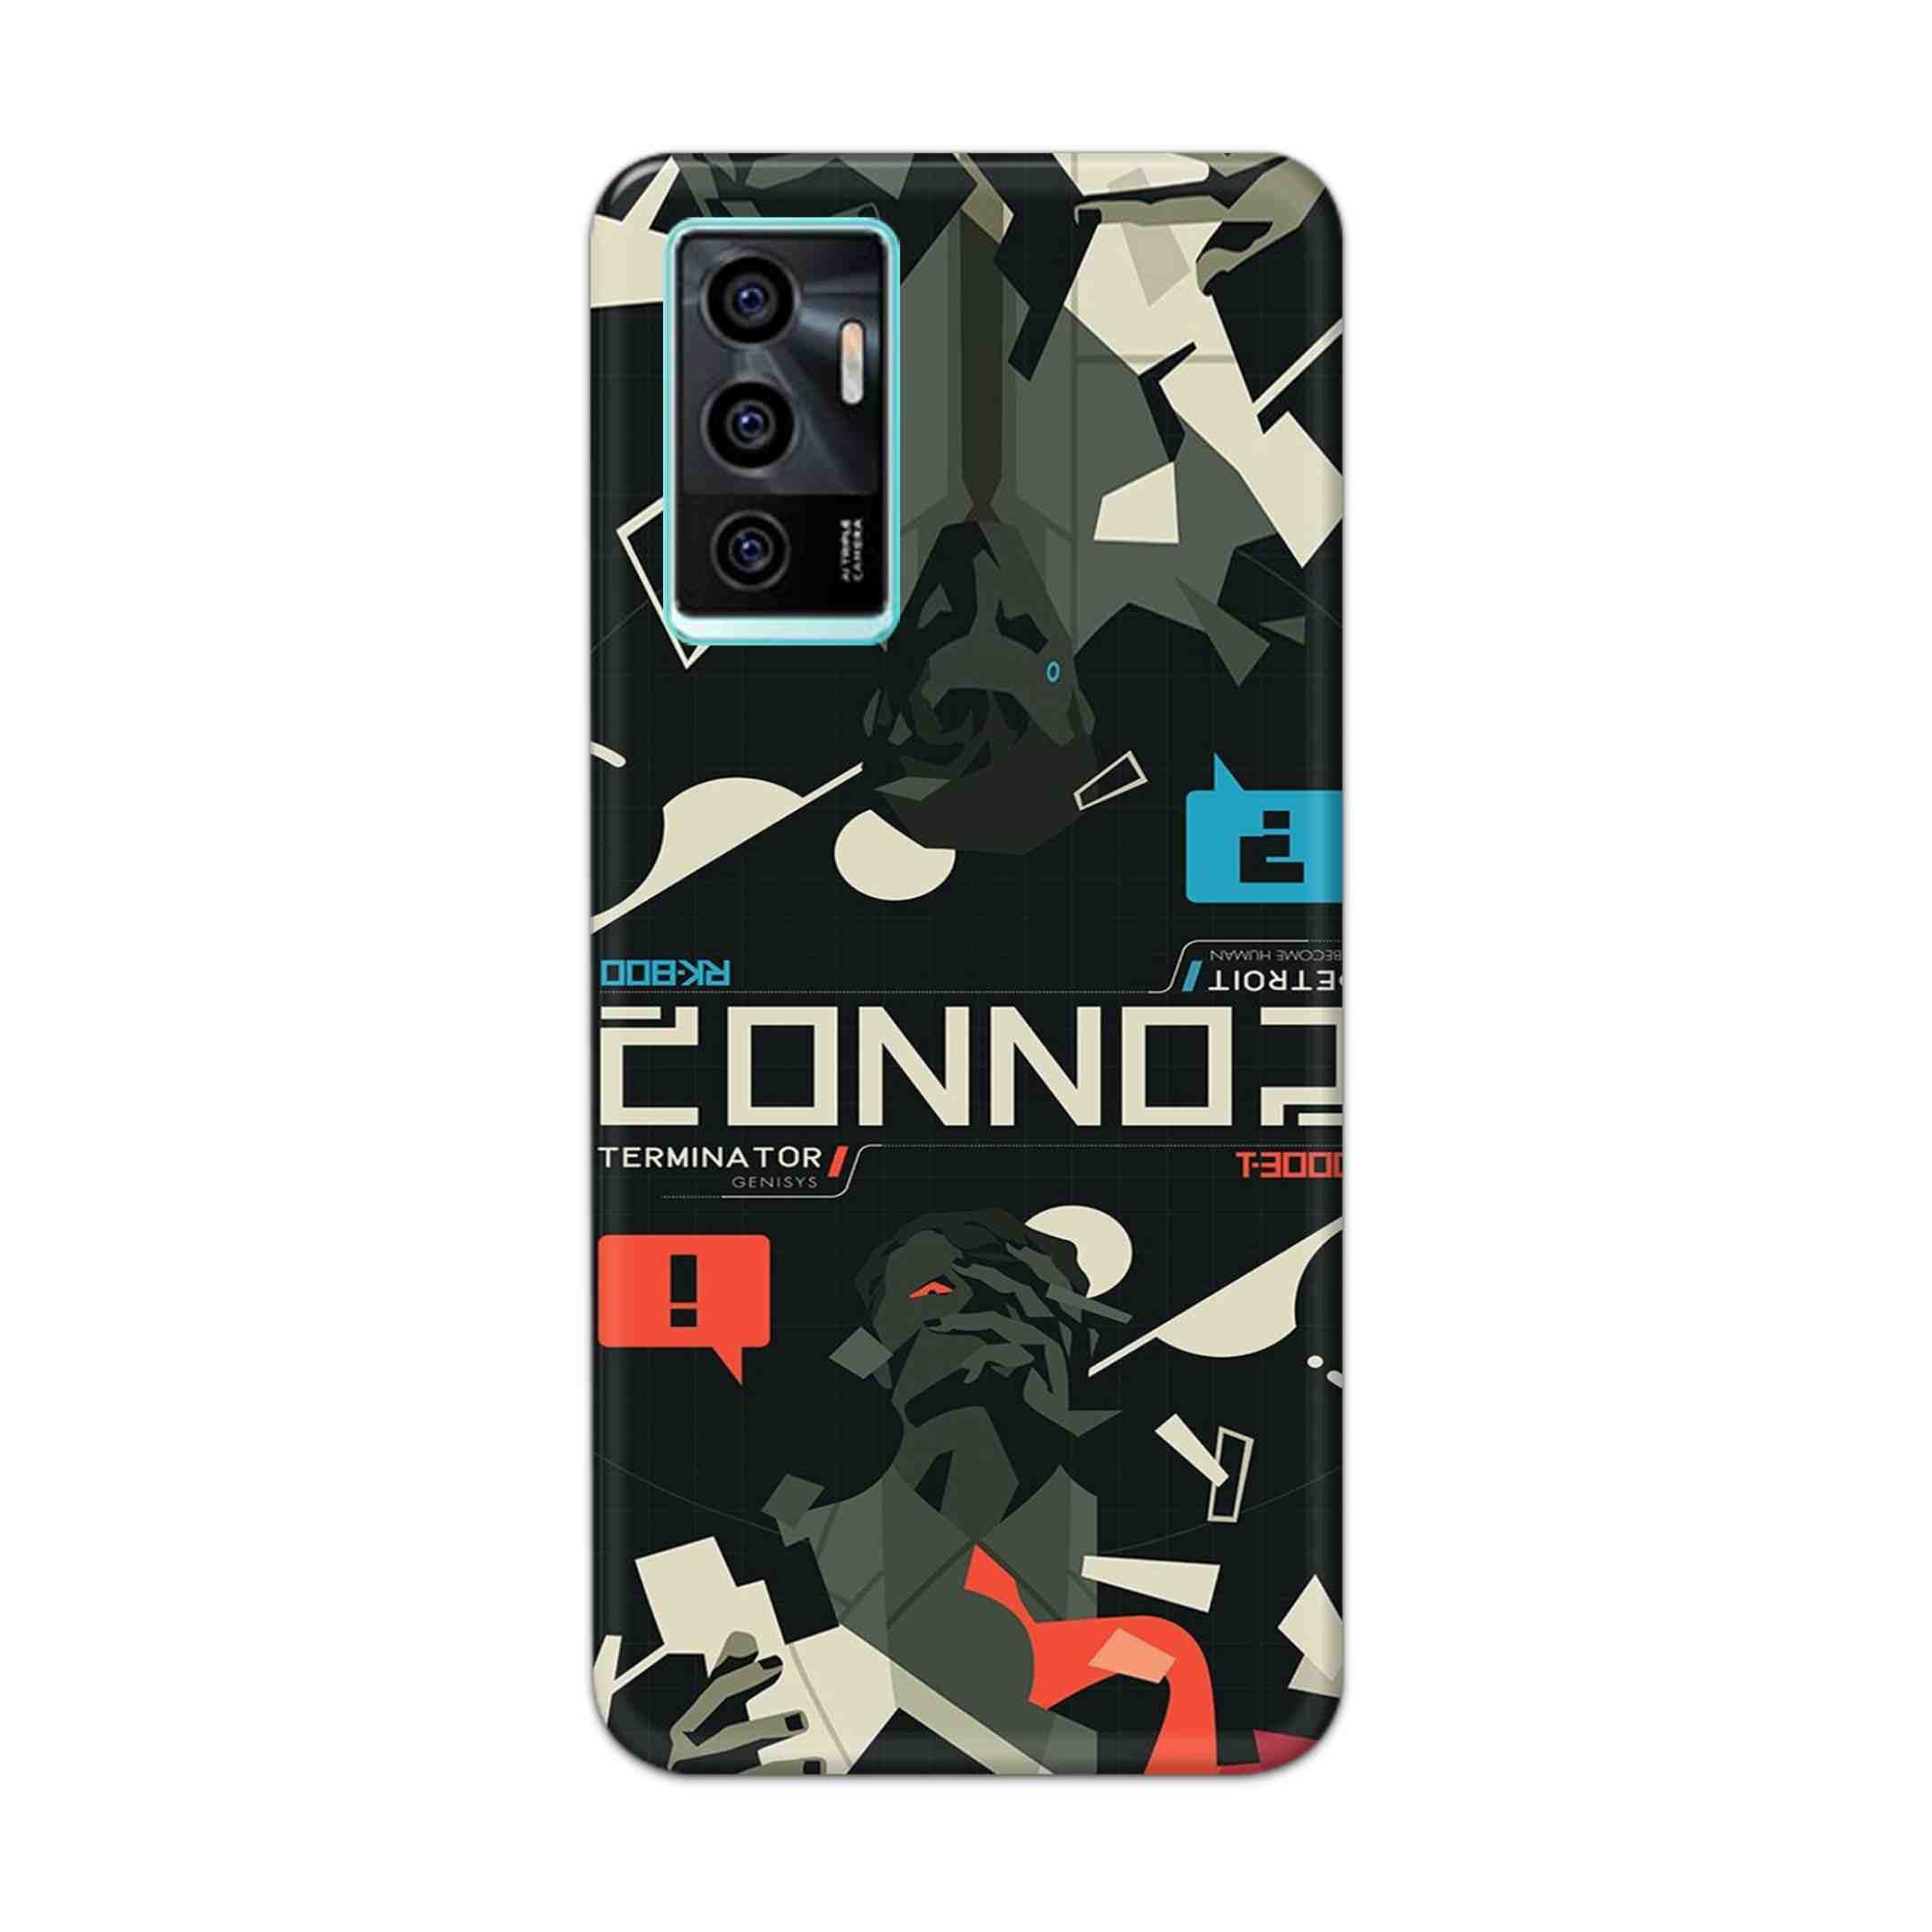 Buy Terminator Hard Back Mobile Phone Case Cover For Vivo v23e Online